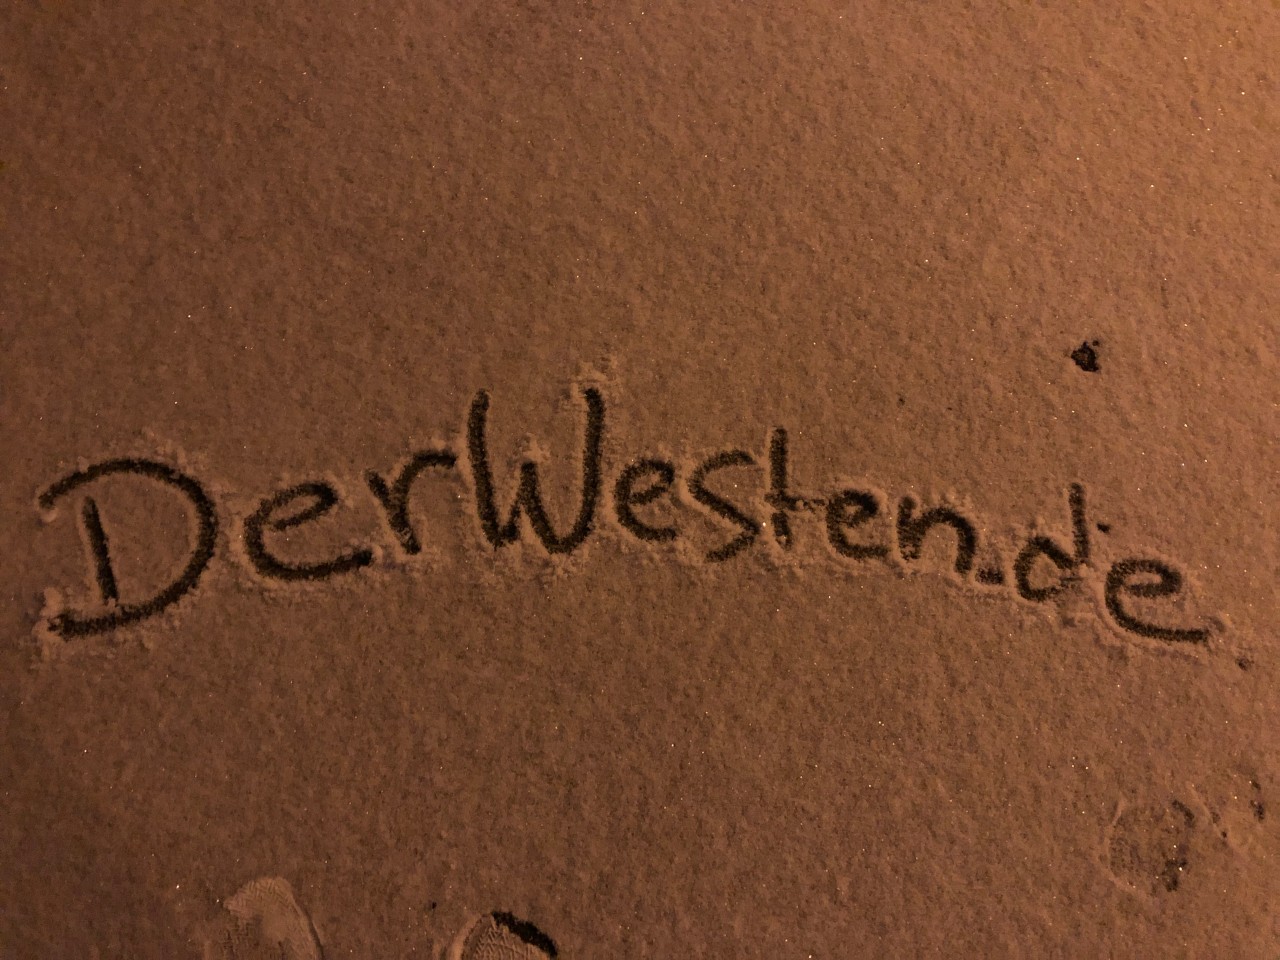 Danke an Justin Brosch für dieses kalligraphische Kunstwerk im Essener Schnee!